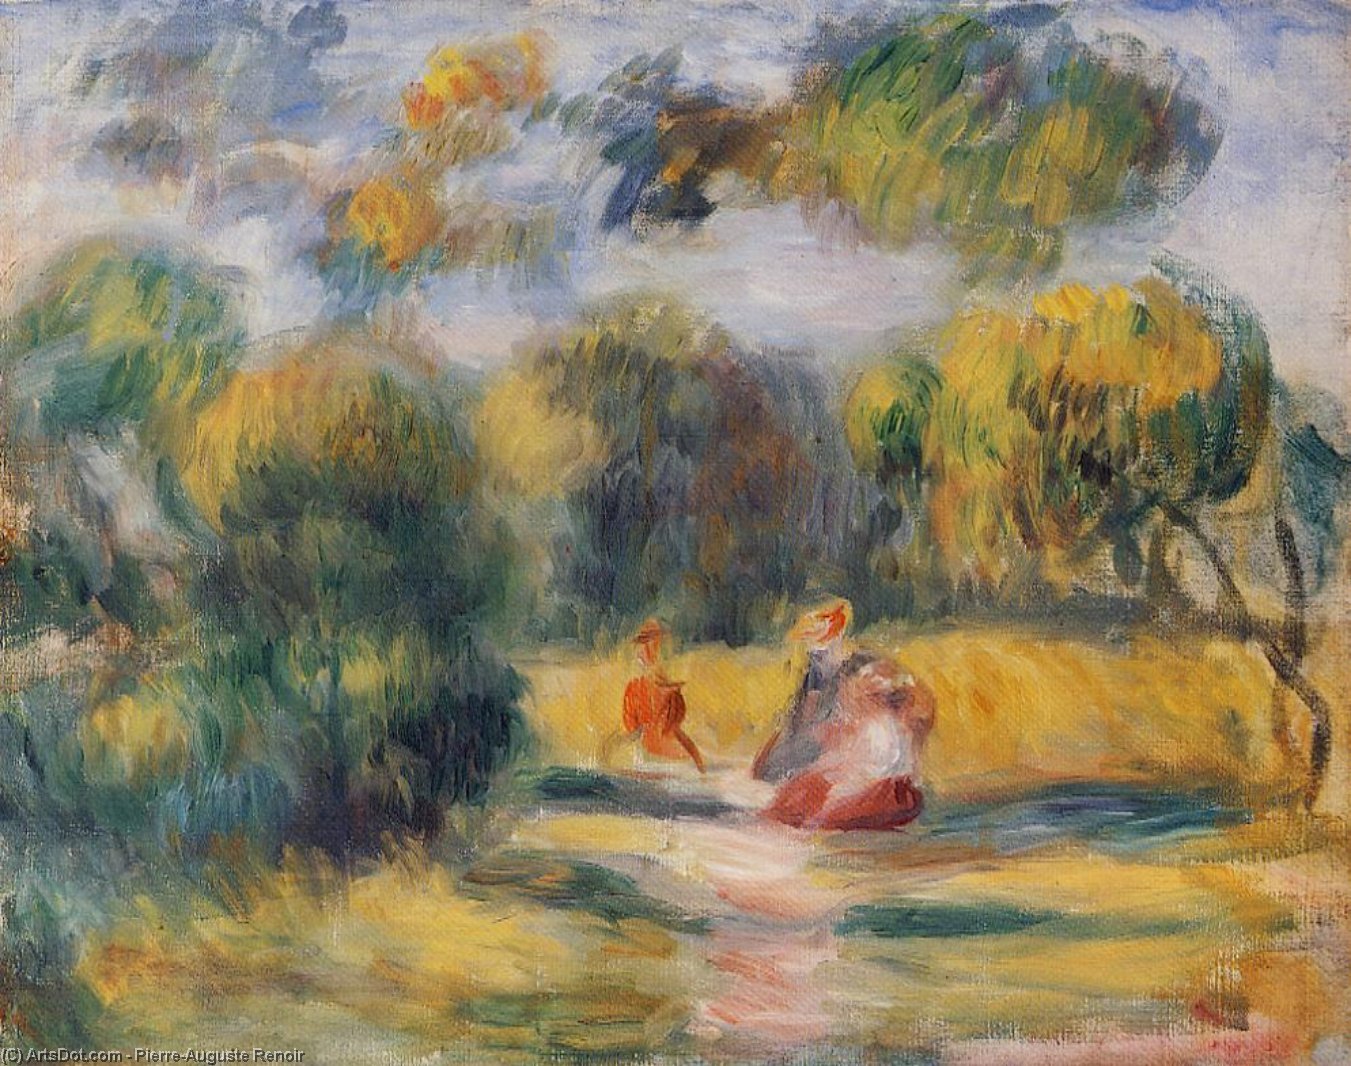 WikiOO.org - Encyclopedia of Fine Arts - Målning, konstverk Pierre-Auguste Renoir - Figures in a Landscape